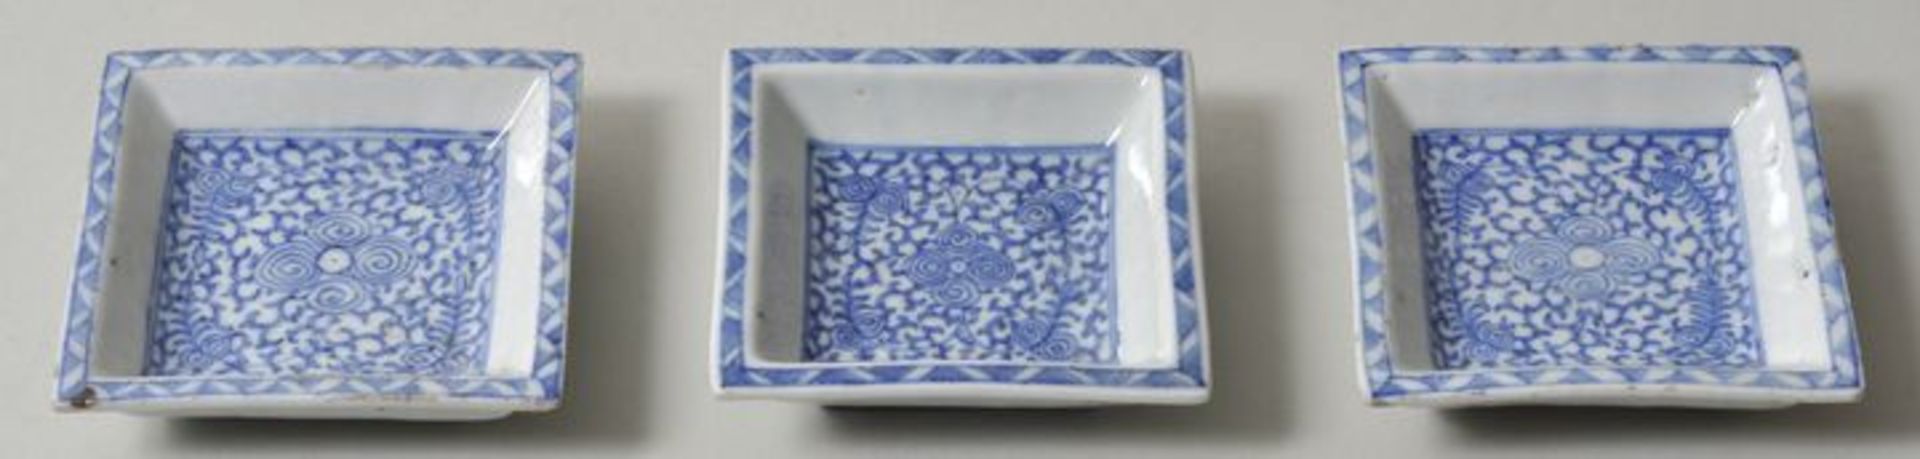 Vietnam (?). Drei kleine Schälchen.Porzellan. Geometrische und florale Muster in Unterglasurblau.